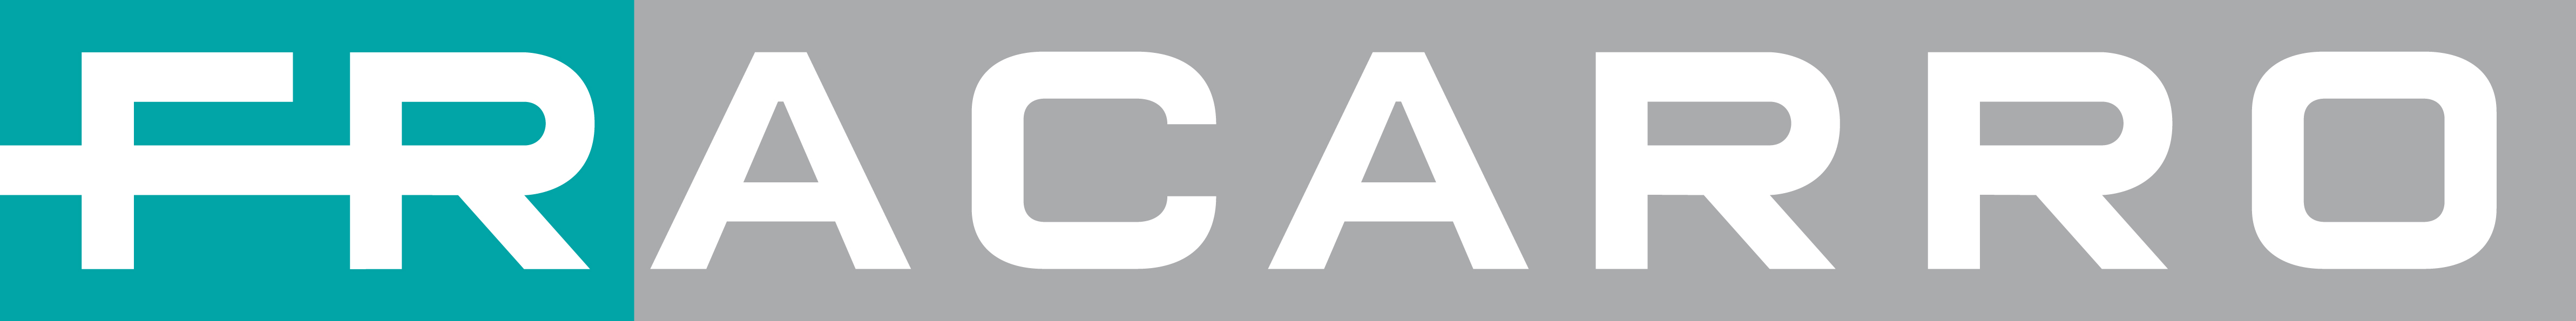 Logo Fracarro